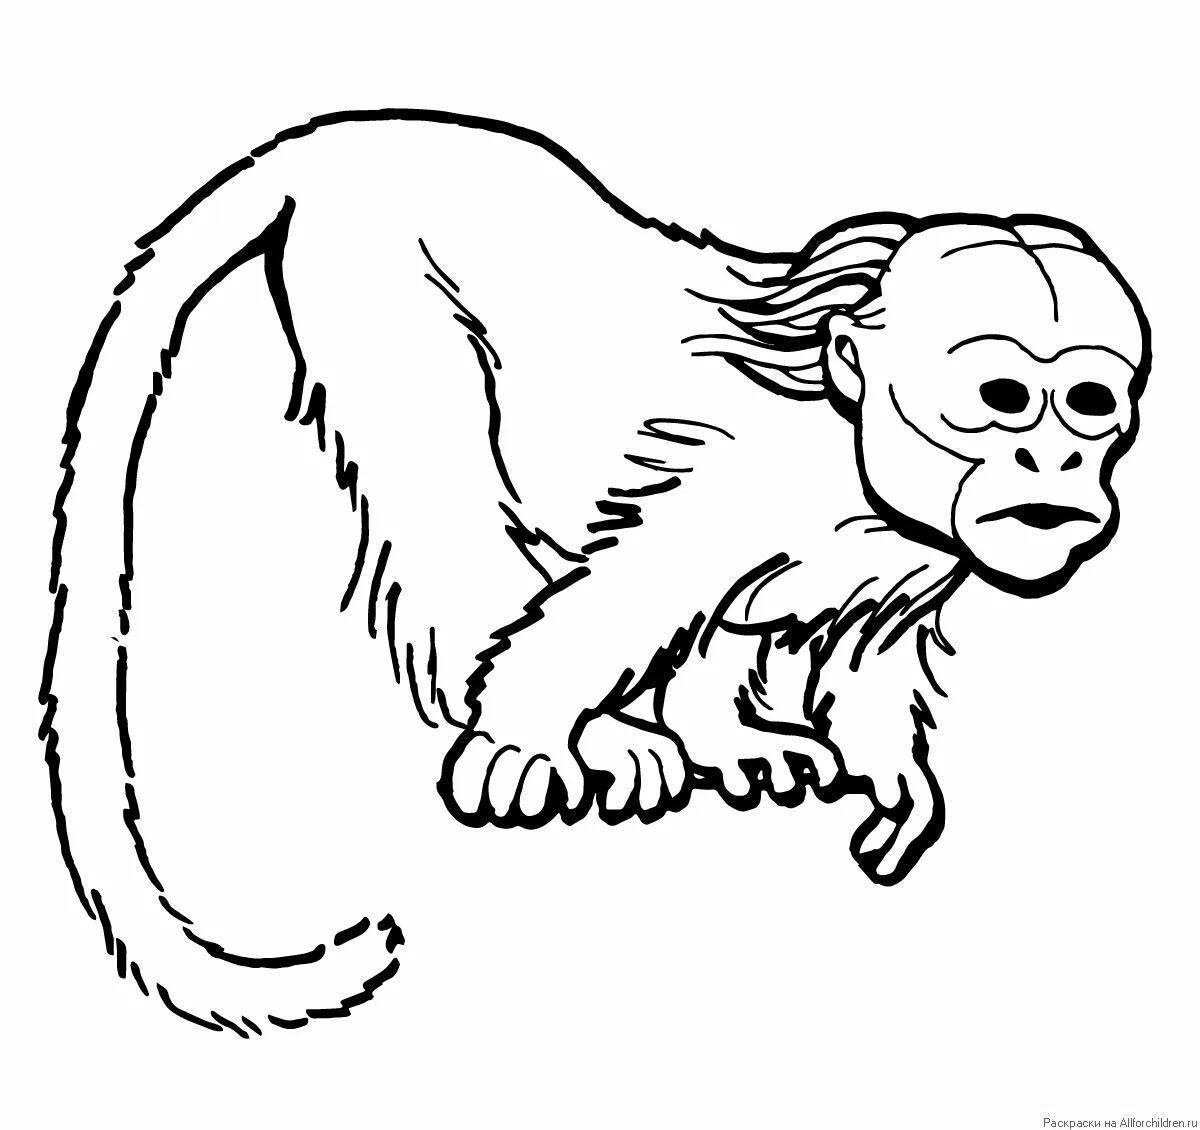 Monkey#6